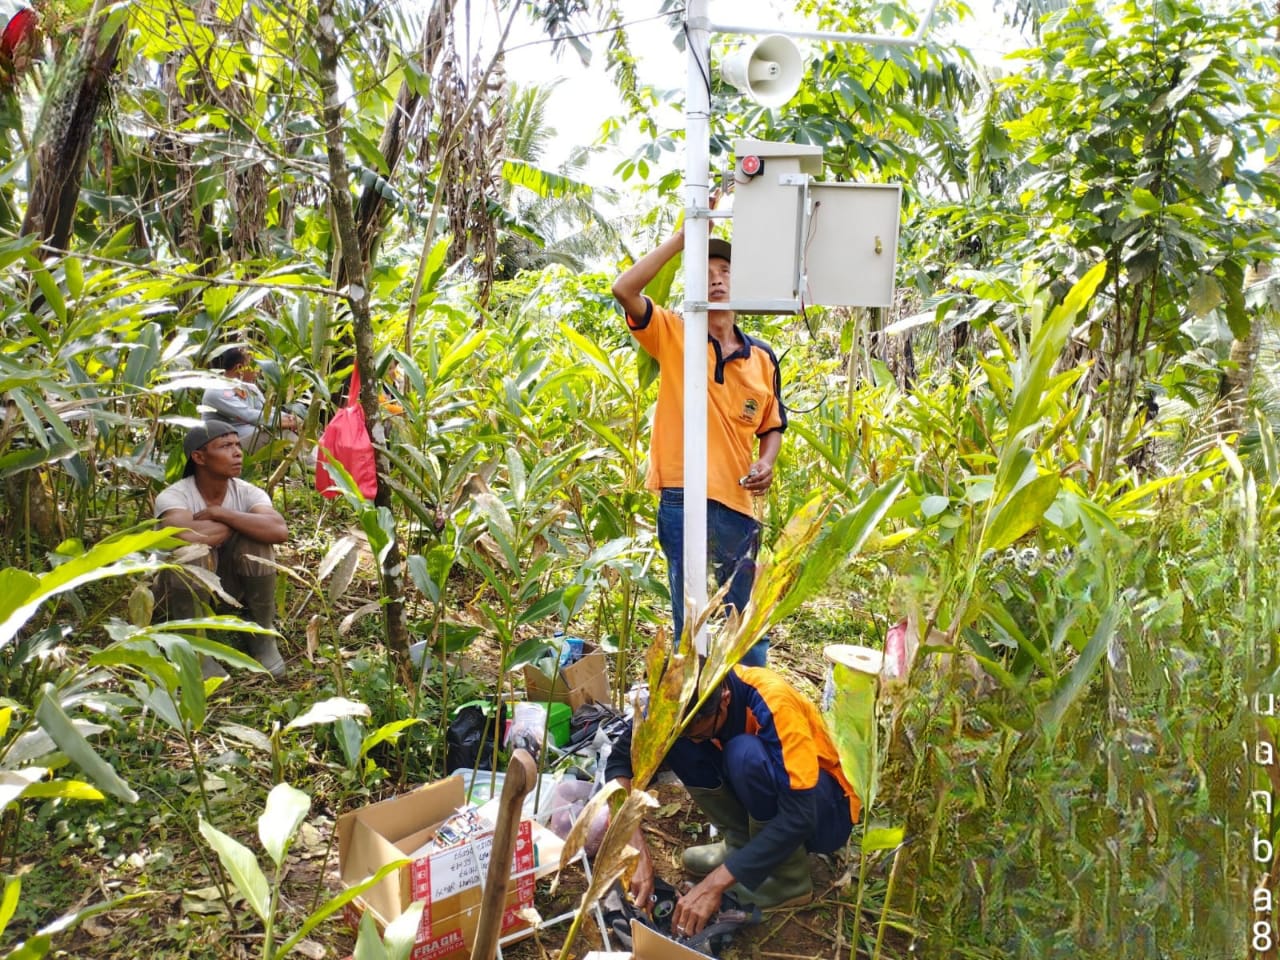 Potensi Tinggi Bencana Tanah Bergerak, 7 Desa Telah Dilengkapi EWS Bencana